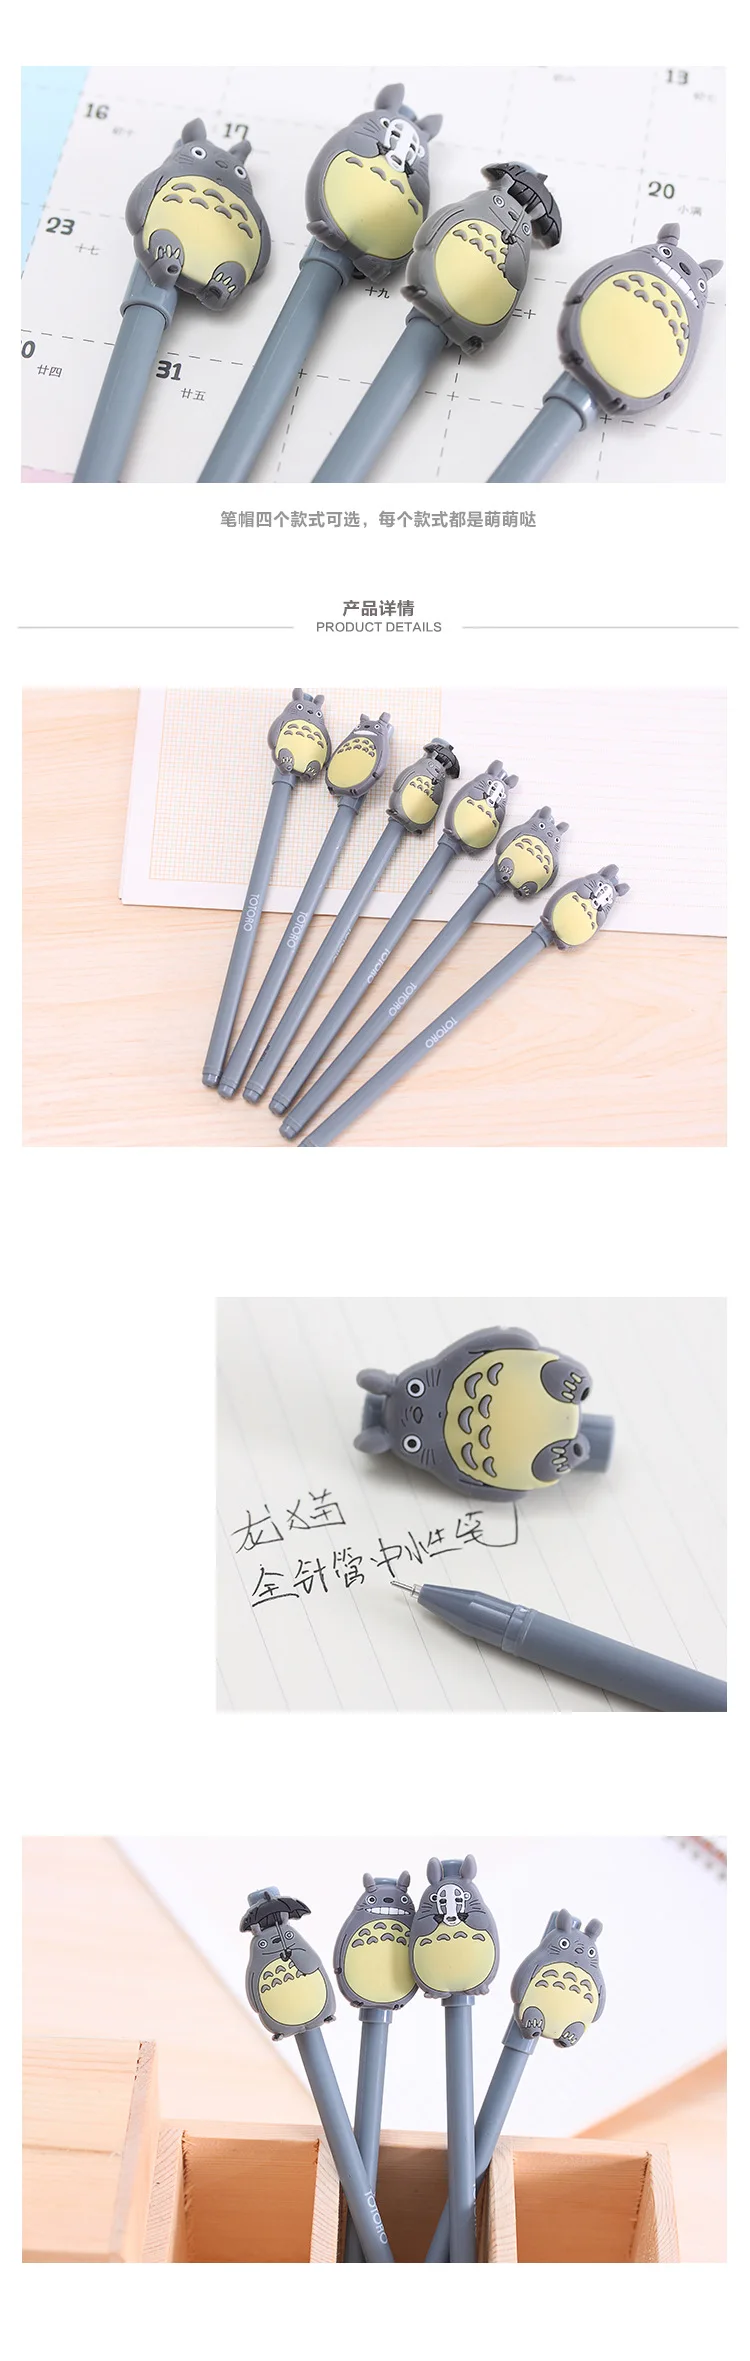 4 lot/pc Милая японская гелевая ручка с мультяшными чернилами/Милая водопроводная ручка/в помощь студенту/креативные канцелярские принадлежности/хороший подарок